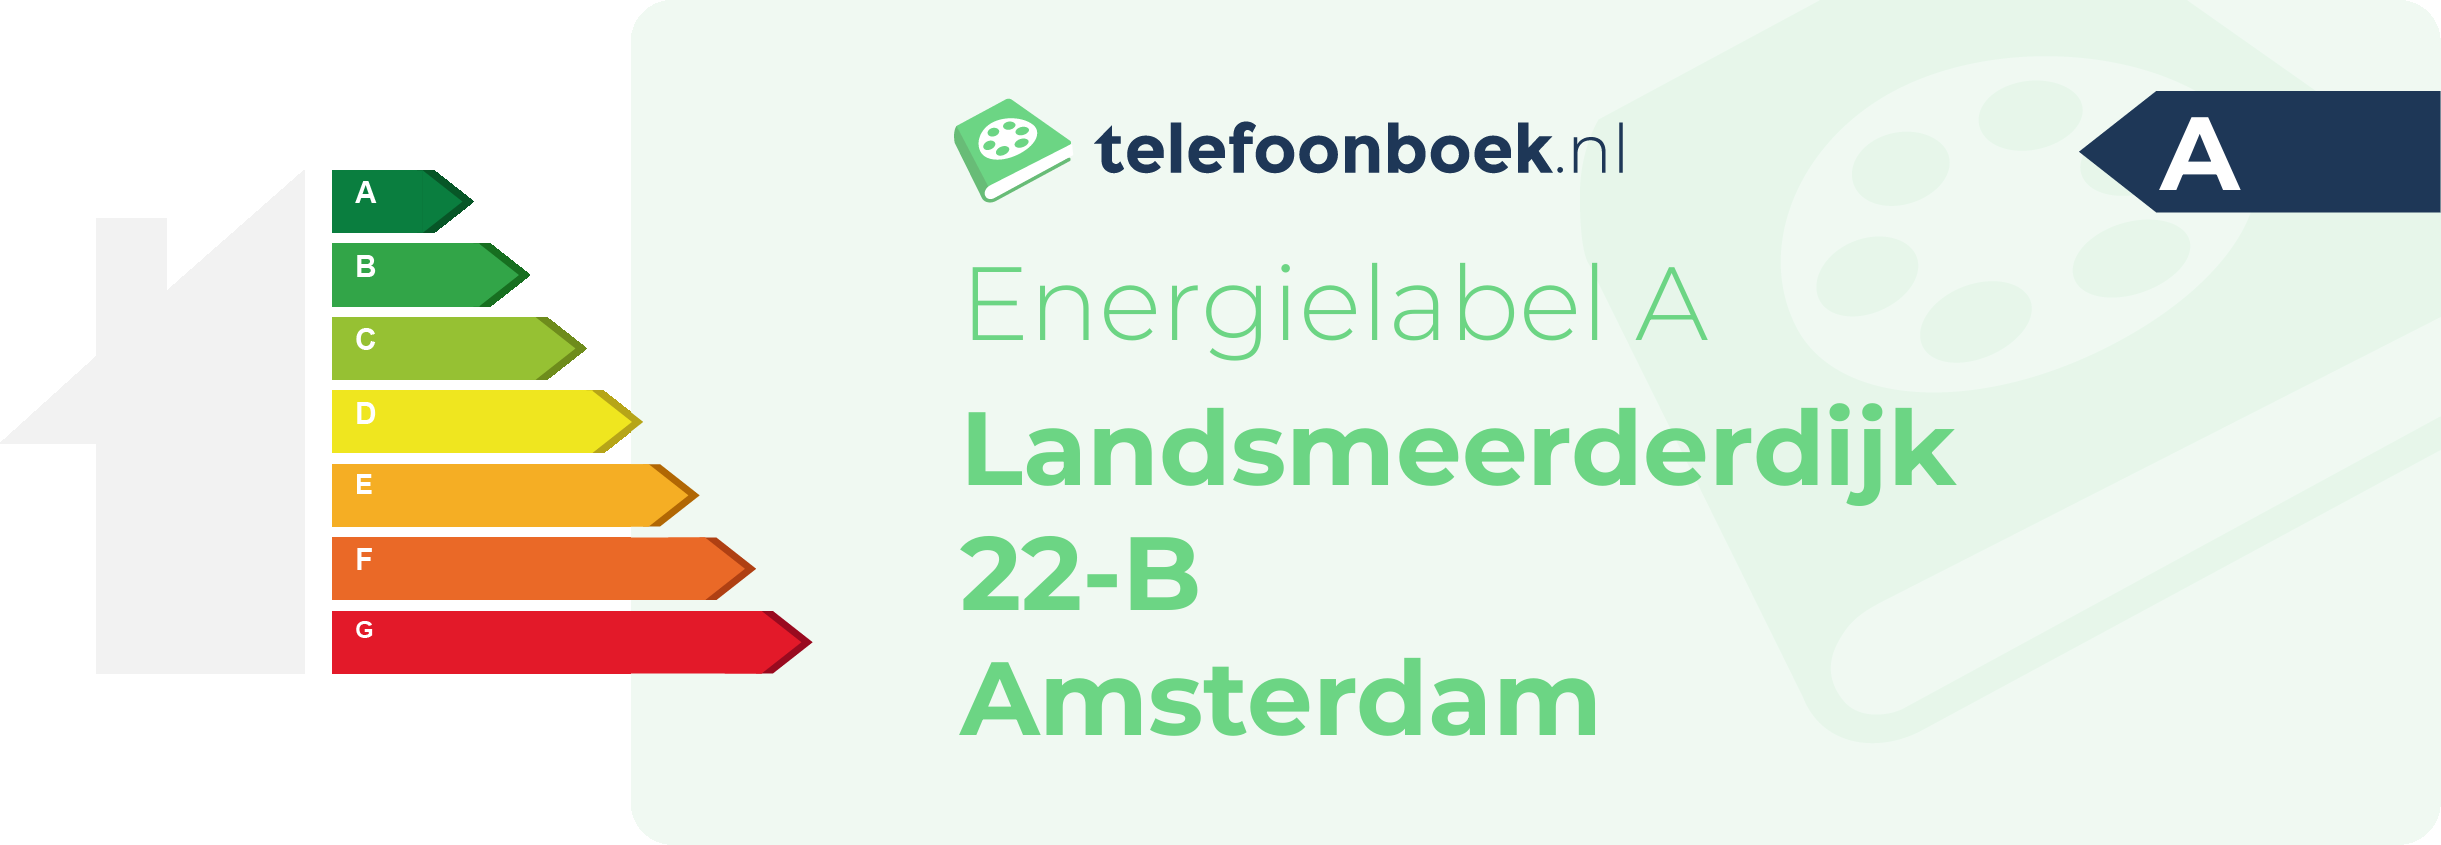 Energielabel Landsmeerderdijk 22-B Amsterdam